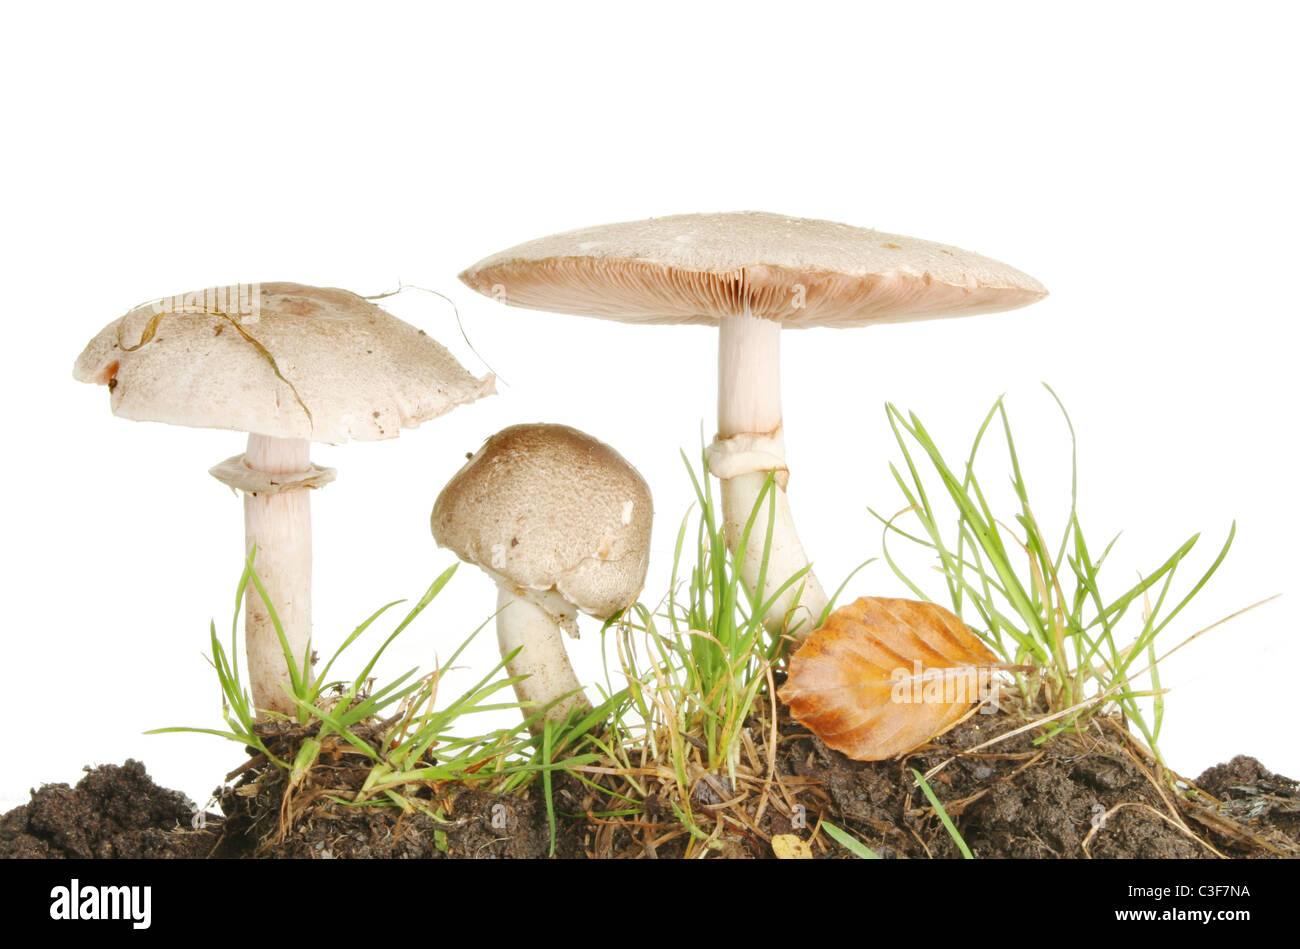 Trois champignons sauvages poussant dans l'herbe Banque D'Images